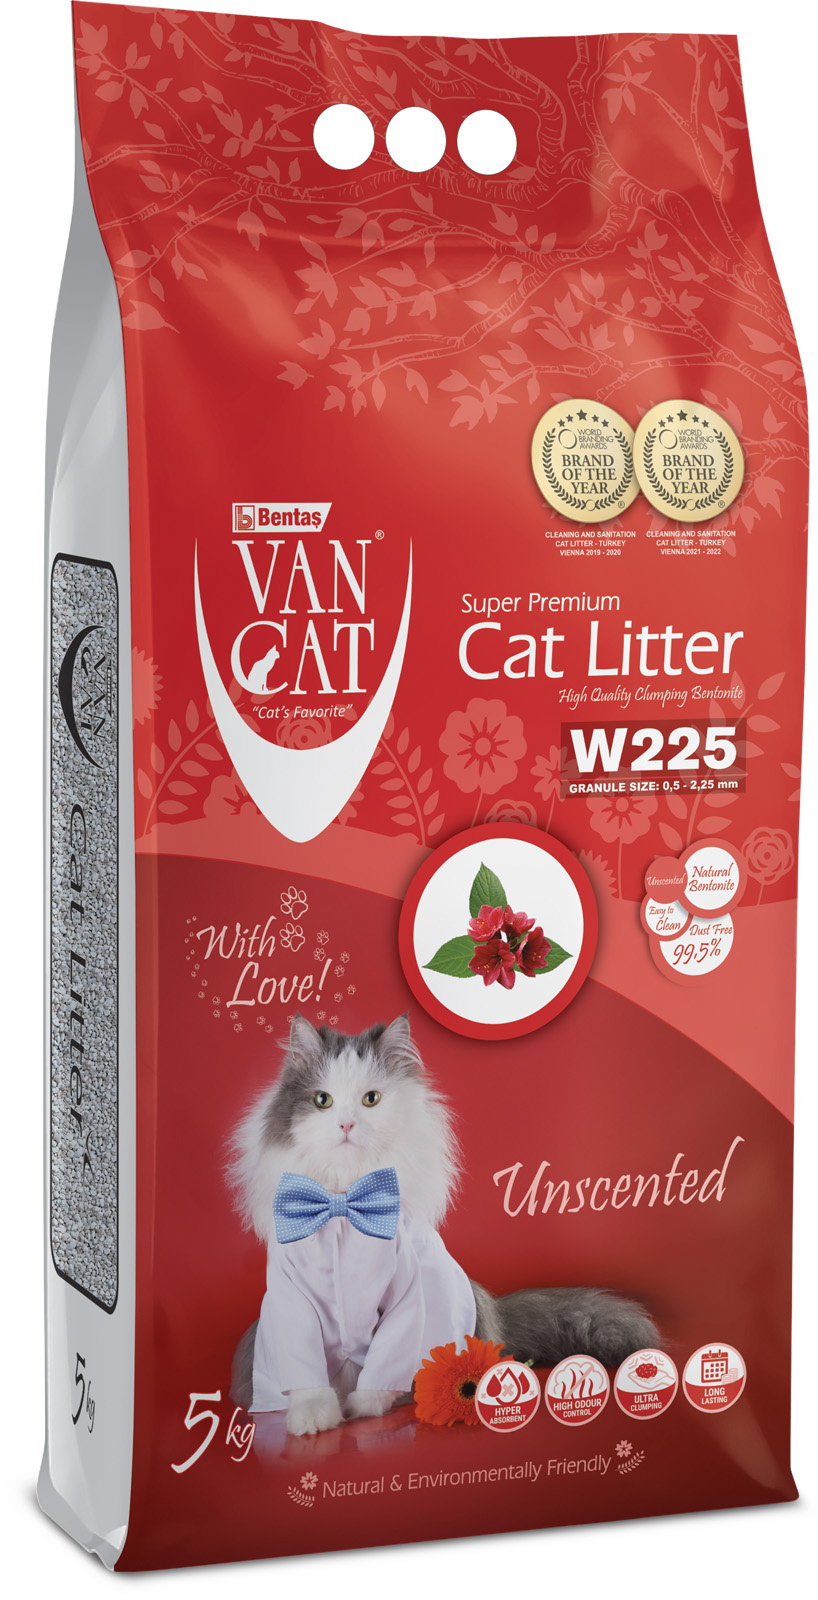 Van Cat Van Cat комкующийся наполнитель 100% натуральный, без пыли, пакет (15 кг) van cat van cat комкующийся наполнитель 100% натуральный без пыли 15 кг